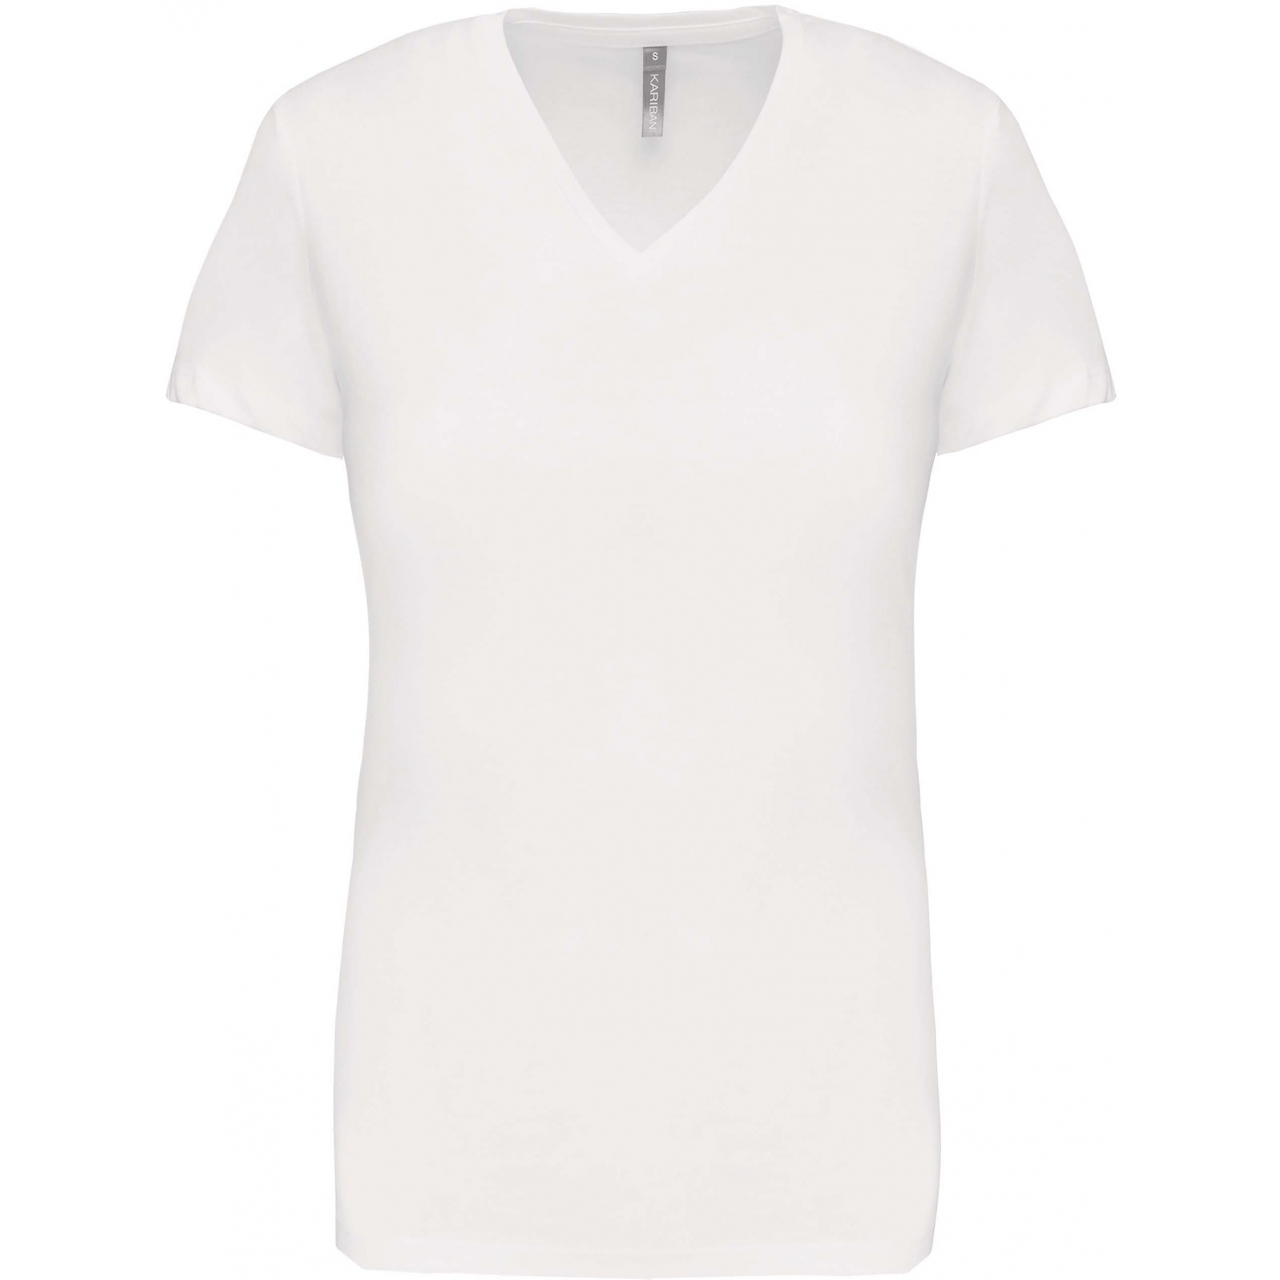 Dámské tričko Kariban V-neck s krátkým rukávem - bílé, M